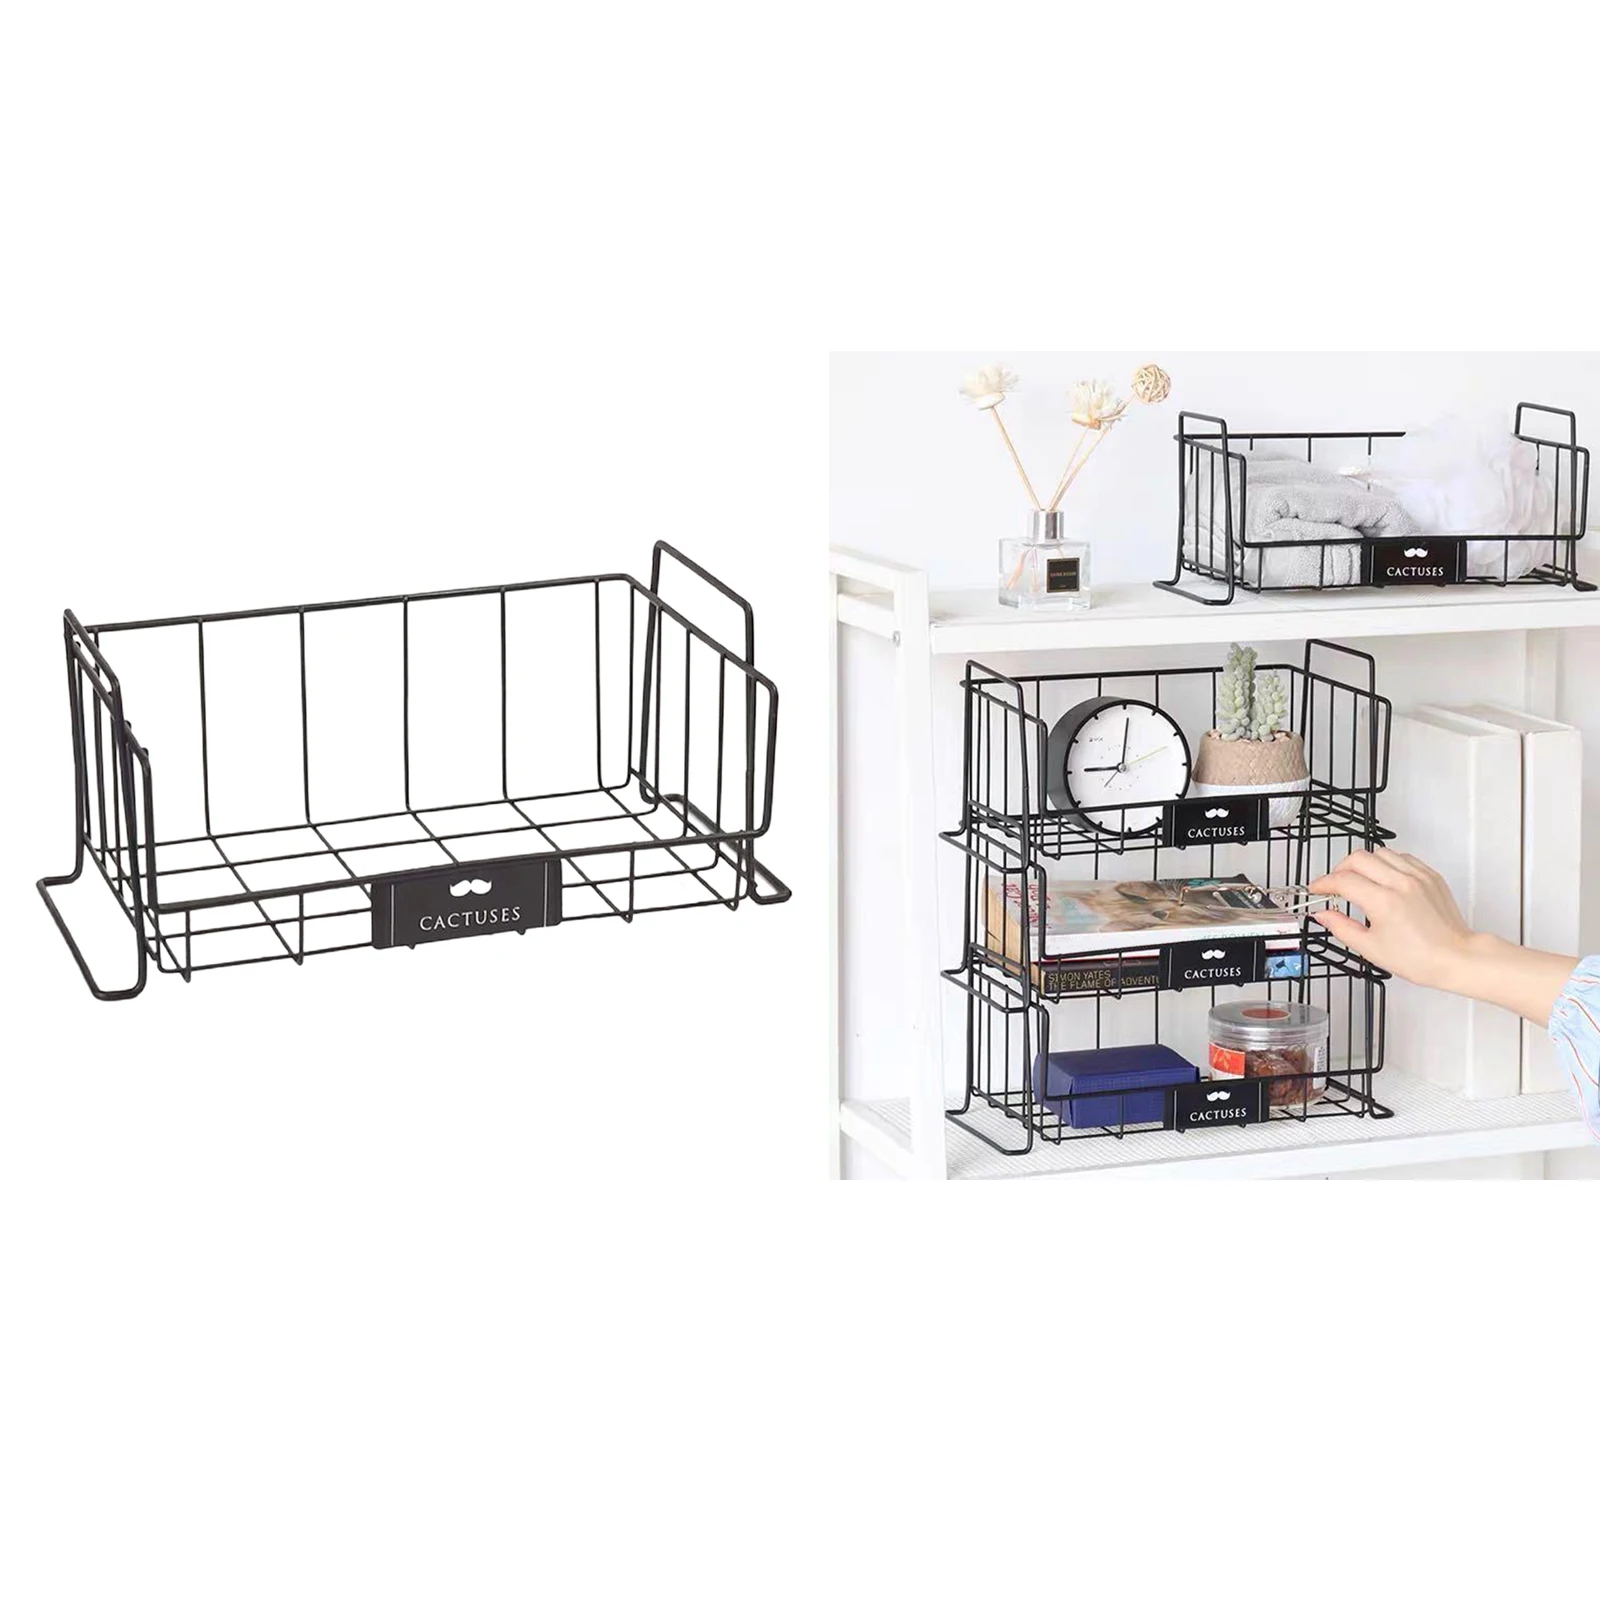 Household Wire Storage Basket Bins Organizer & Handles for Kitchen Bathroom Wire Basket Freezer Organizer